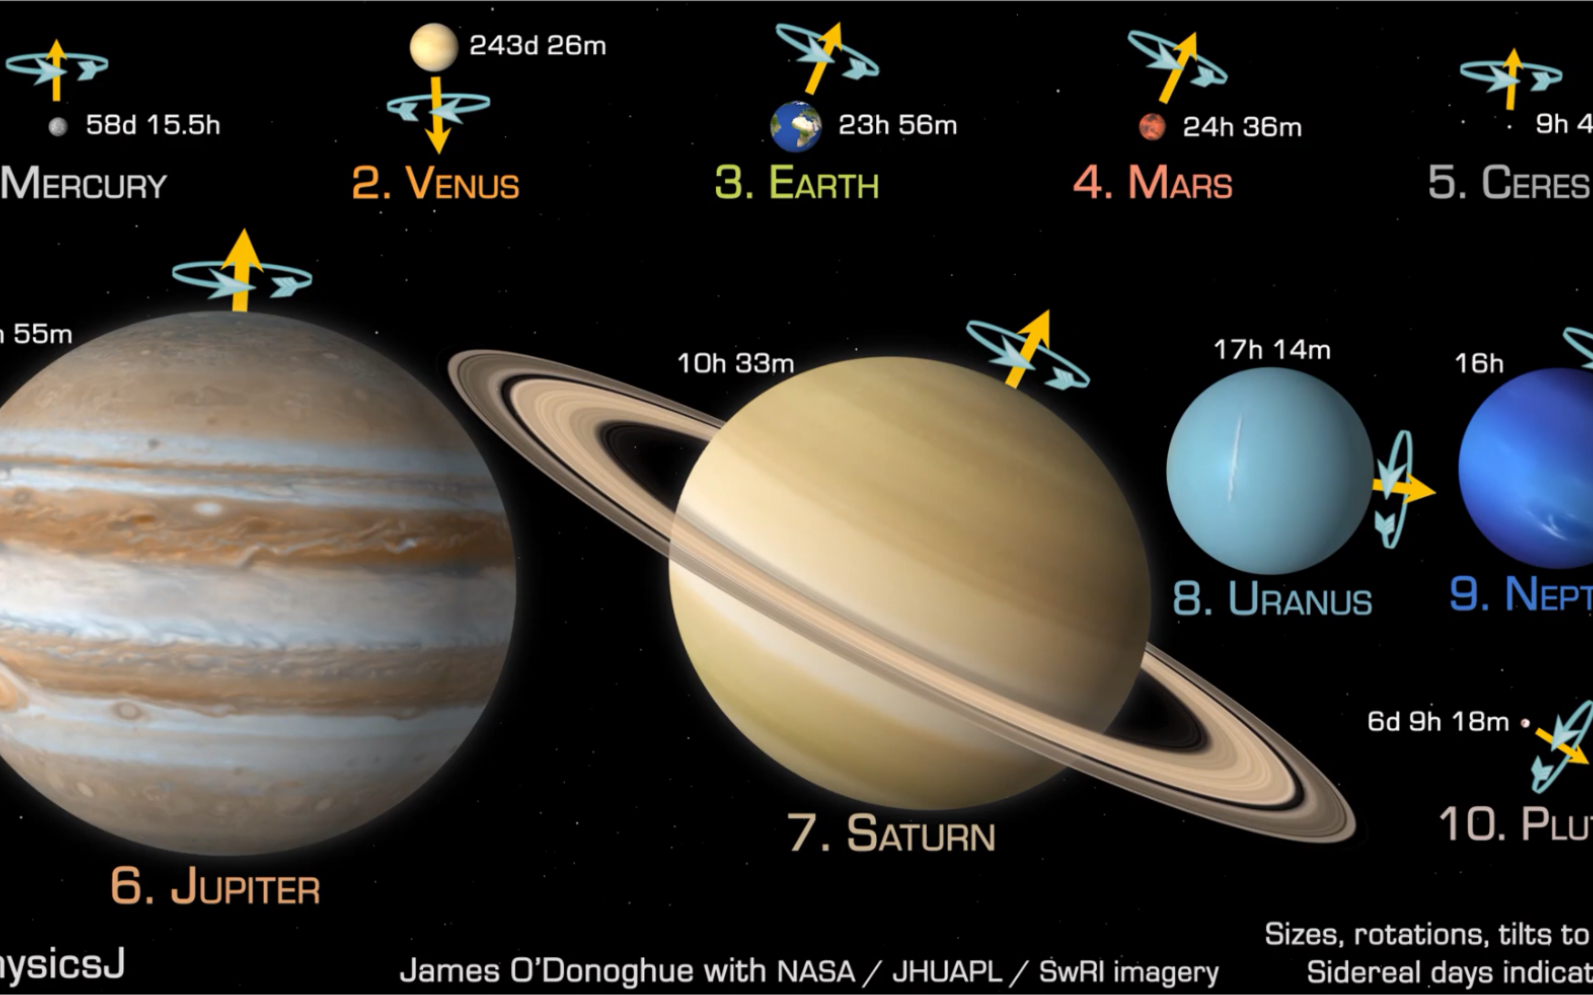 太阳系八大行星参数表图片